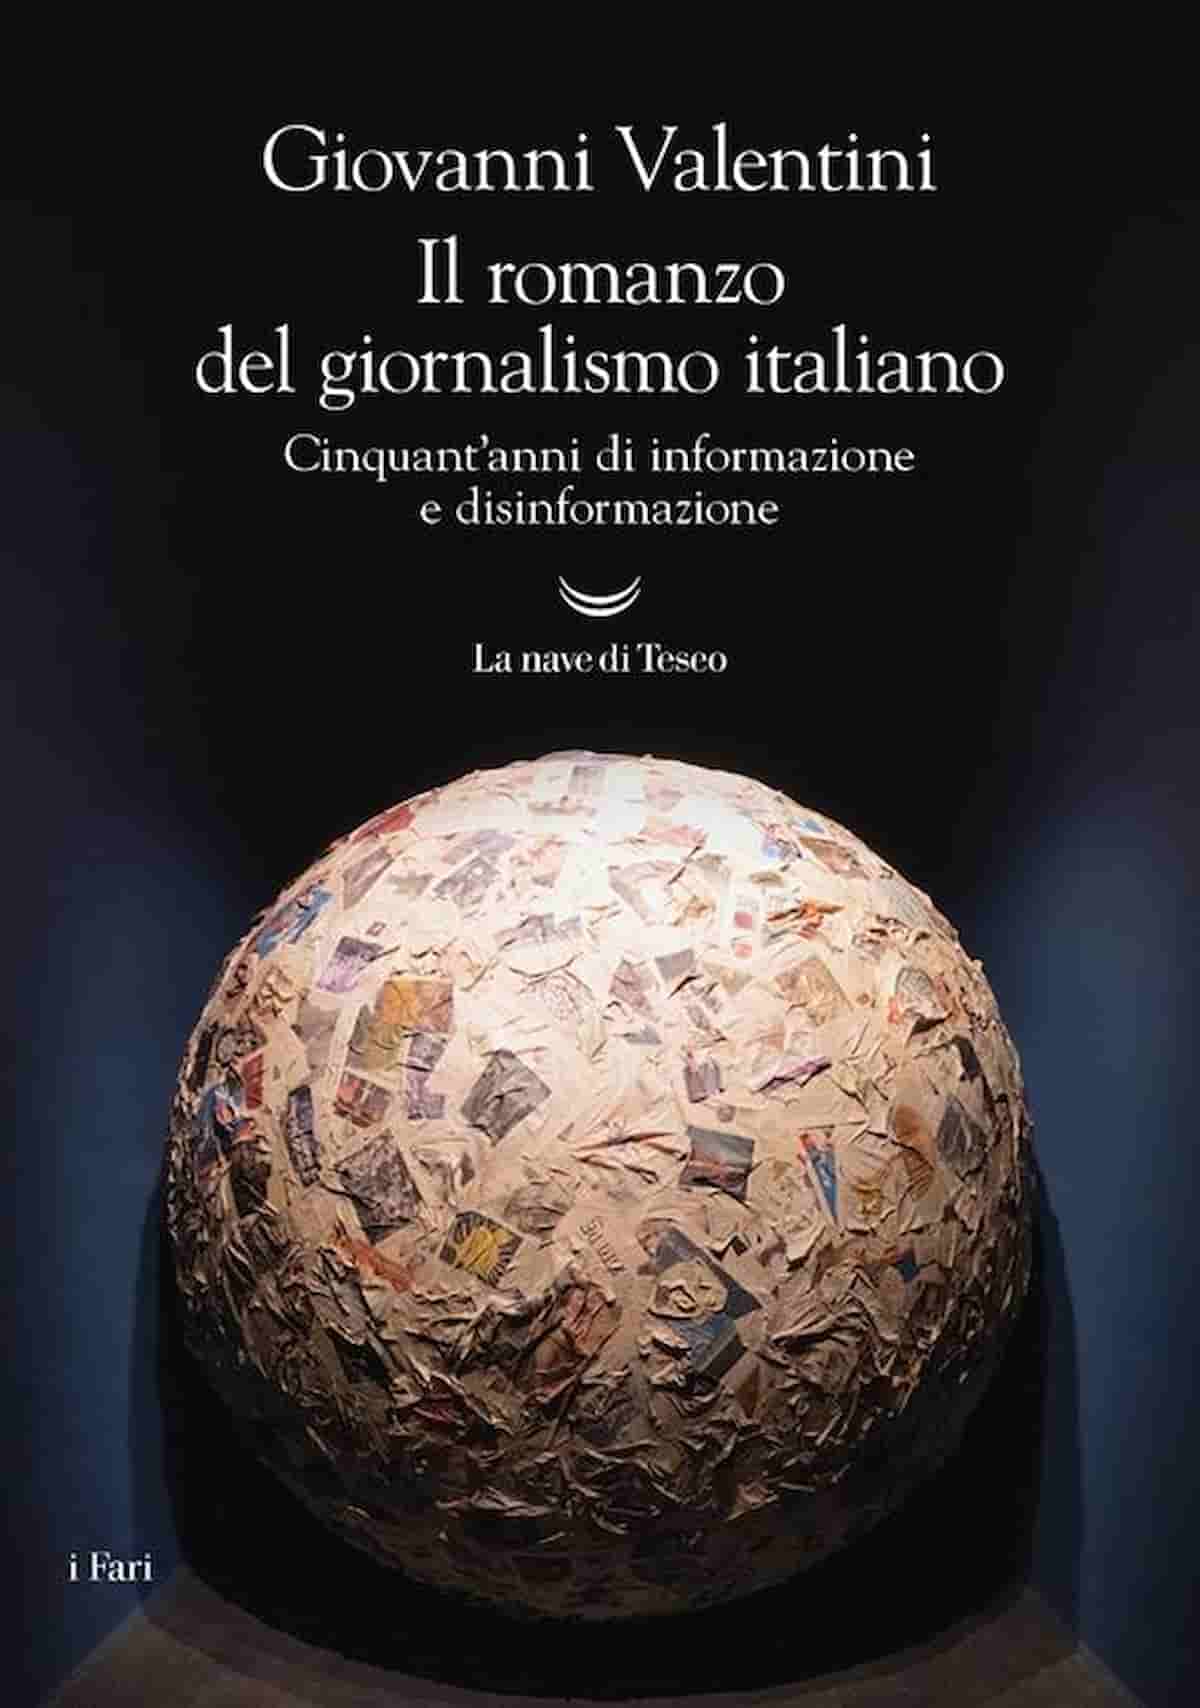 Il giornalismo italiano, la sua storia è un romanzo per Giovanni Valentini ma è anche un atto d'amore per Eugenio Scalfari: "Più di un secondo padre"